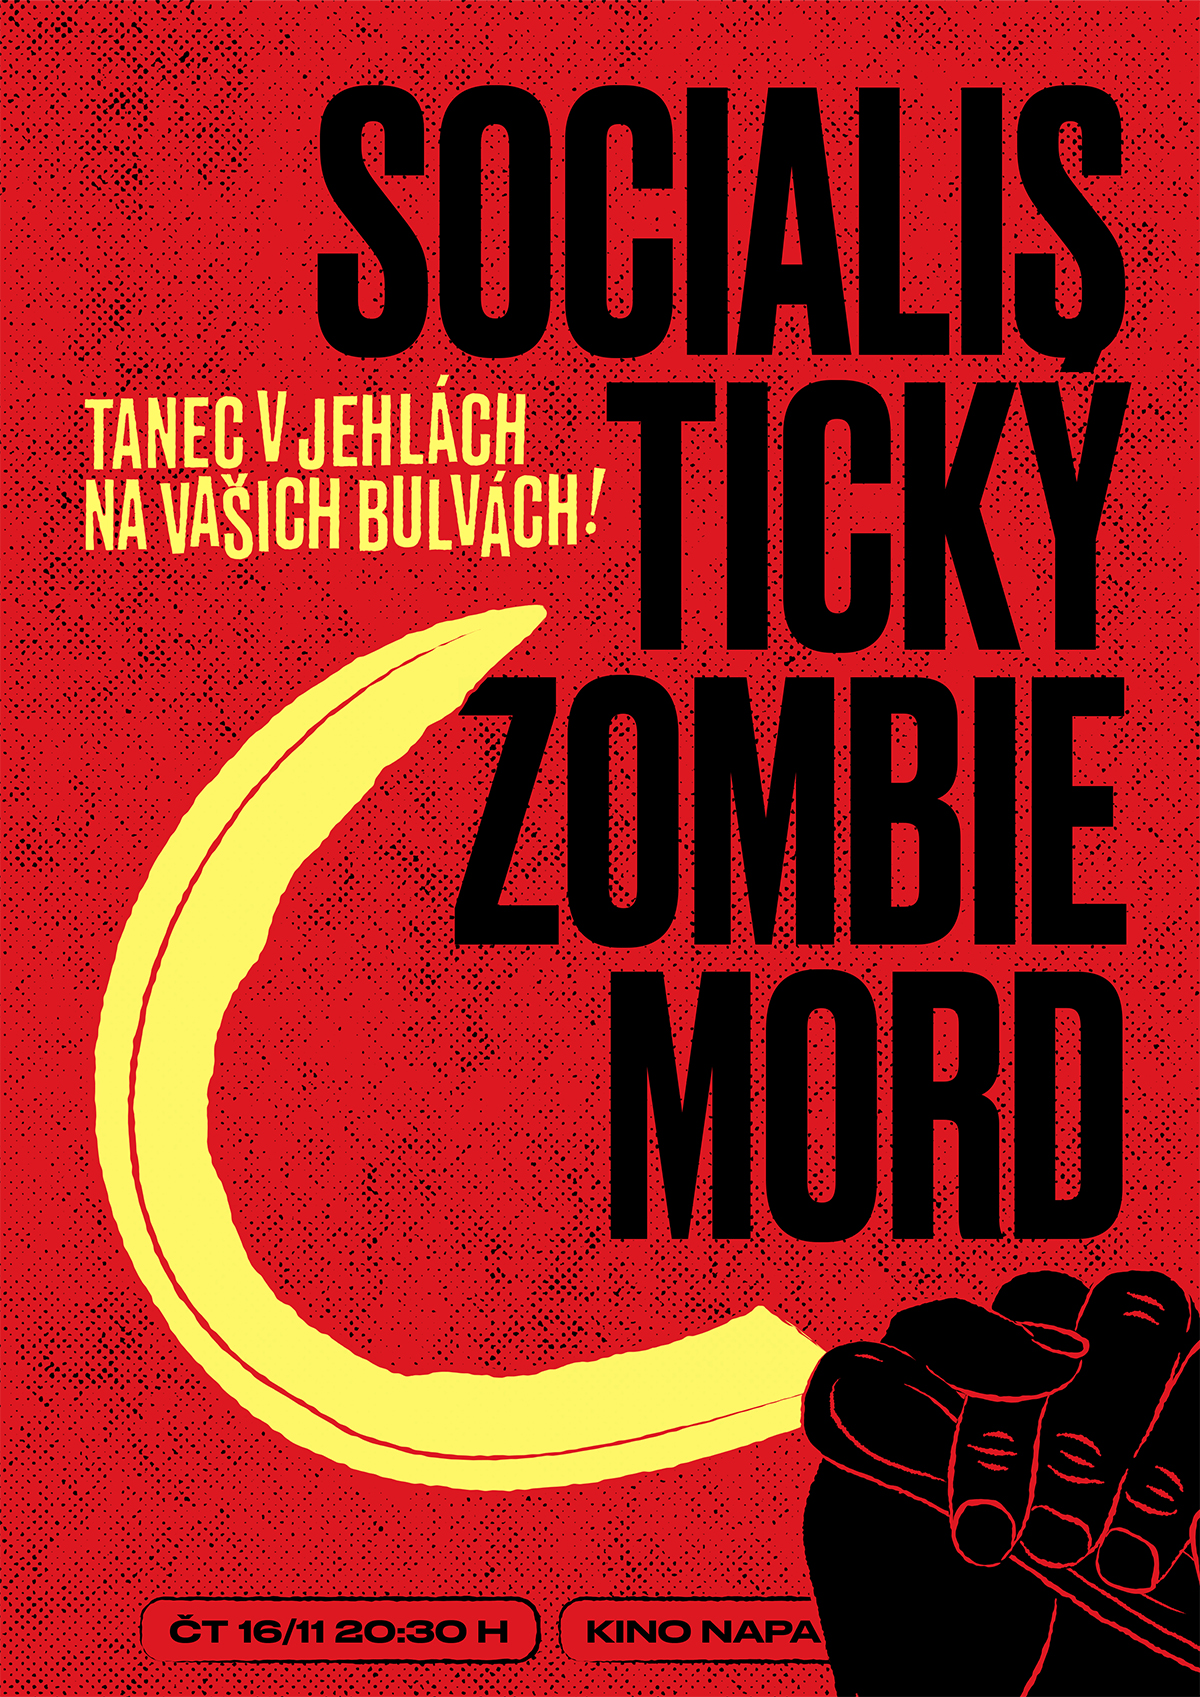 Socialistický Zombi Mord | Tanec v jehlách na vašich bulvách!